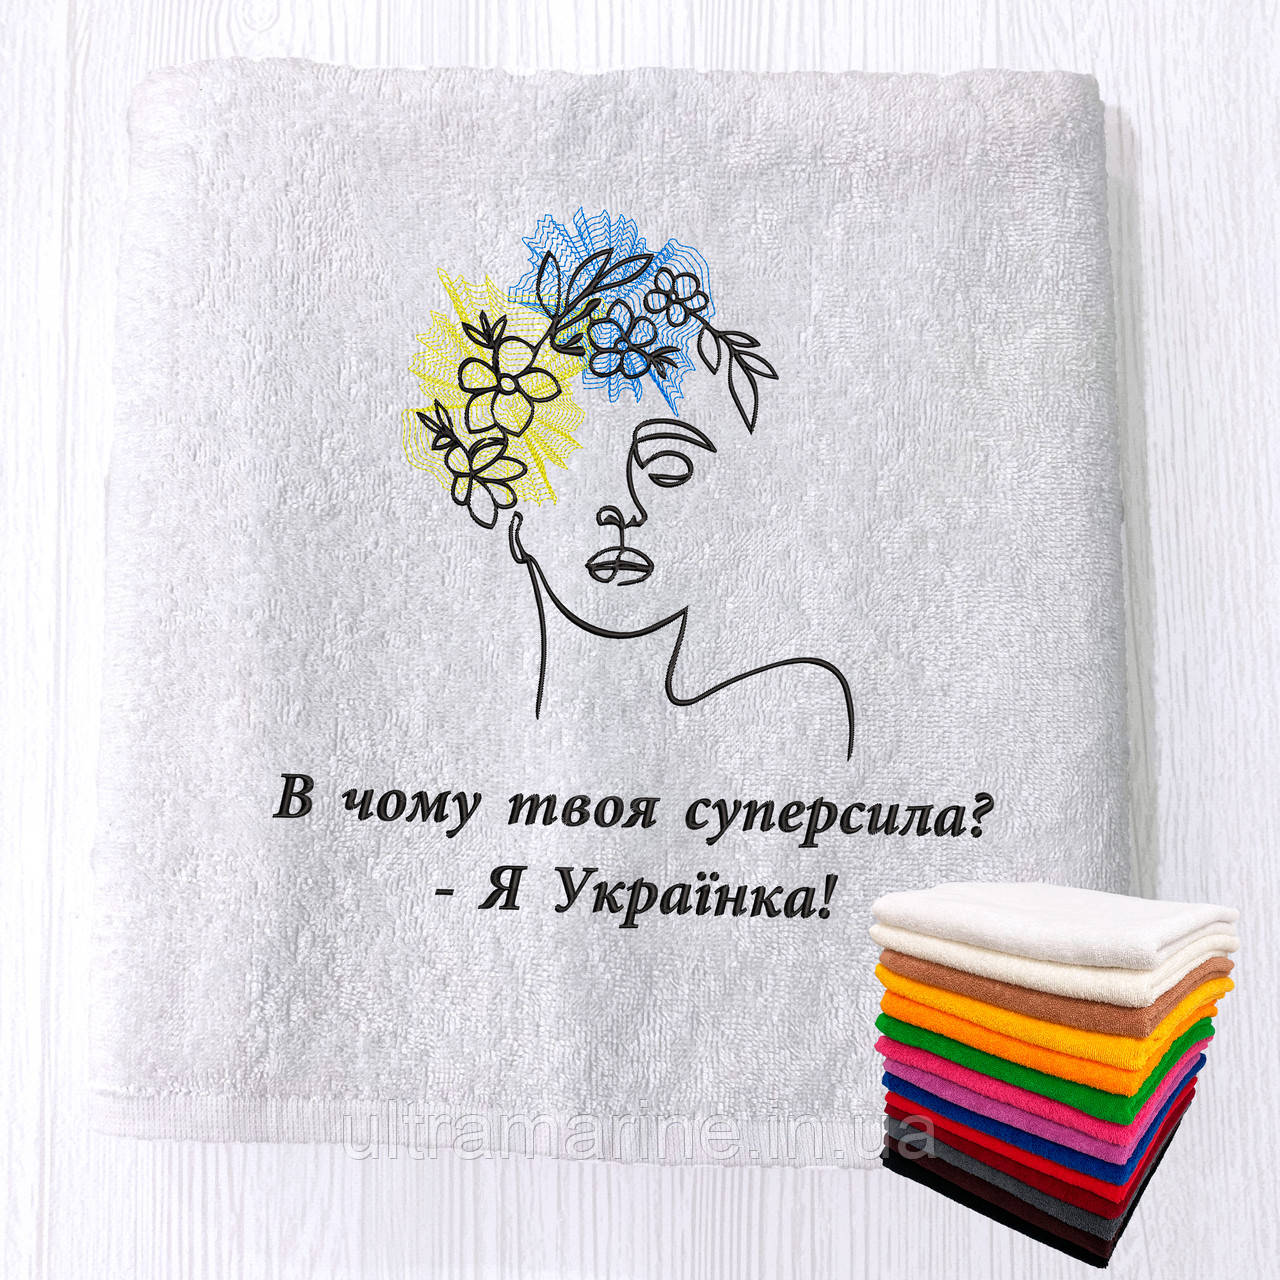 Патріотичний подарунок жінці на 8 березня - рушник з вишивкою "В чому твоя суперсила? - Я Українка" 70х140см